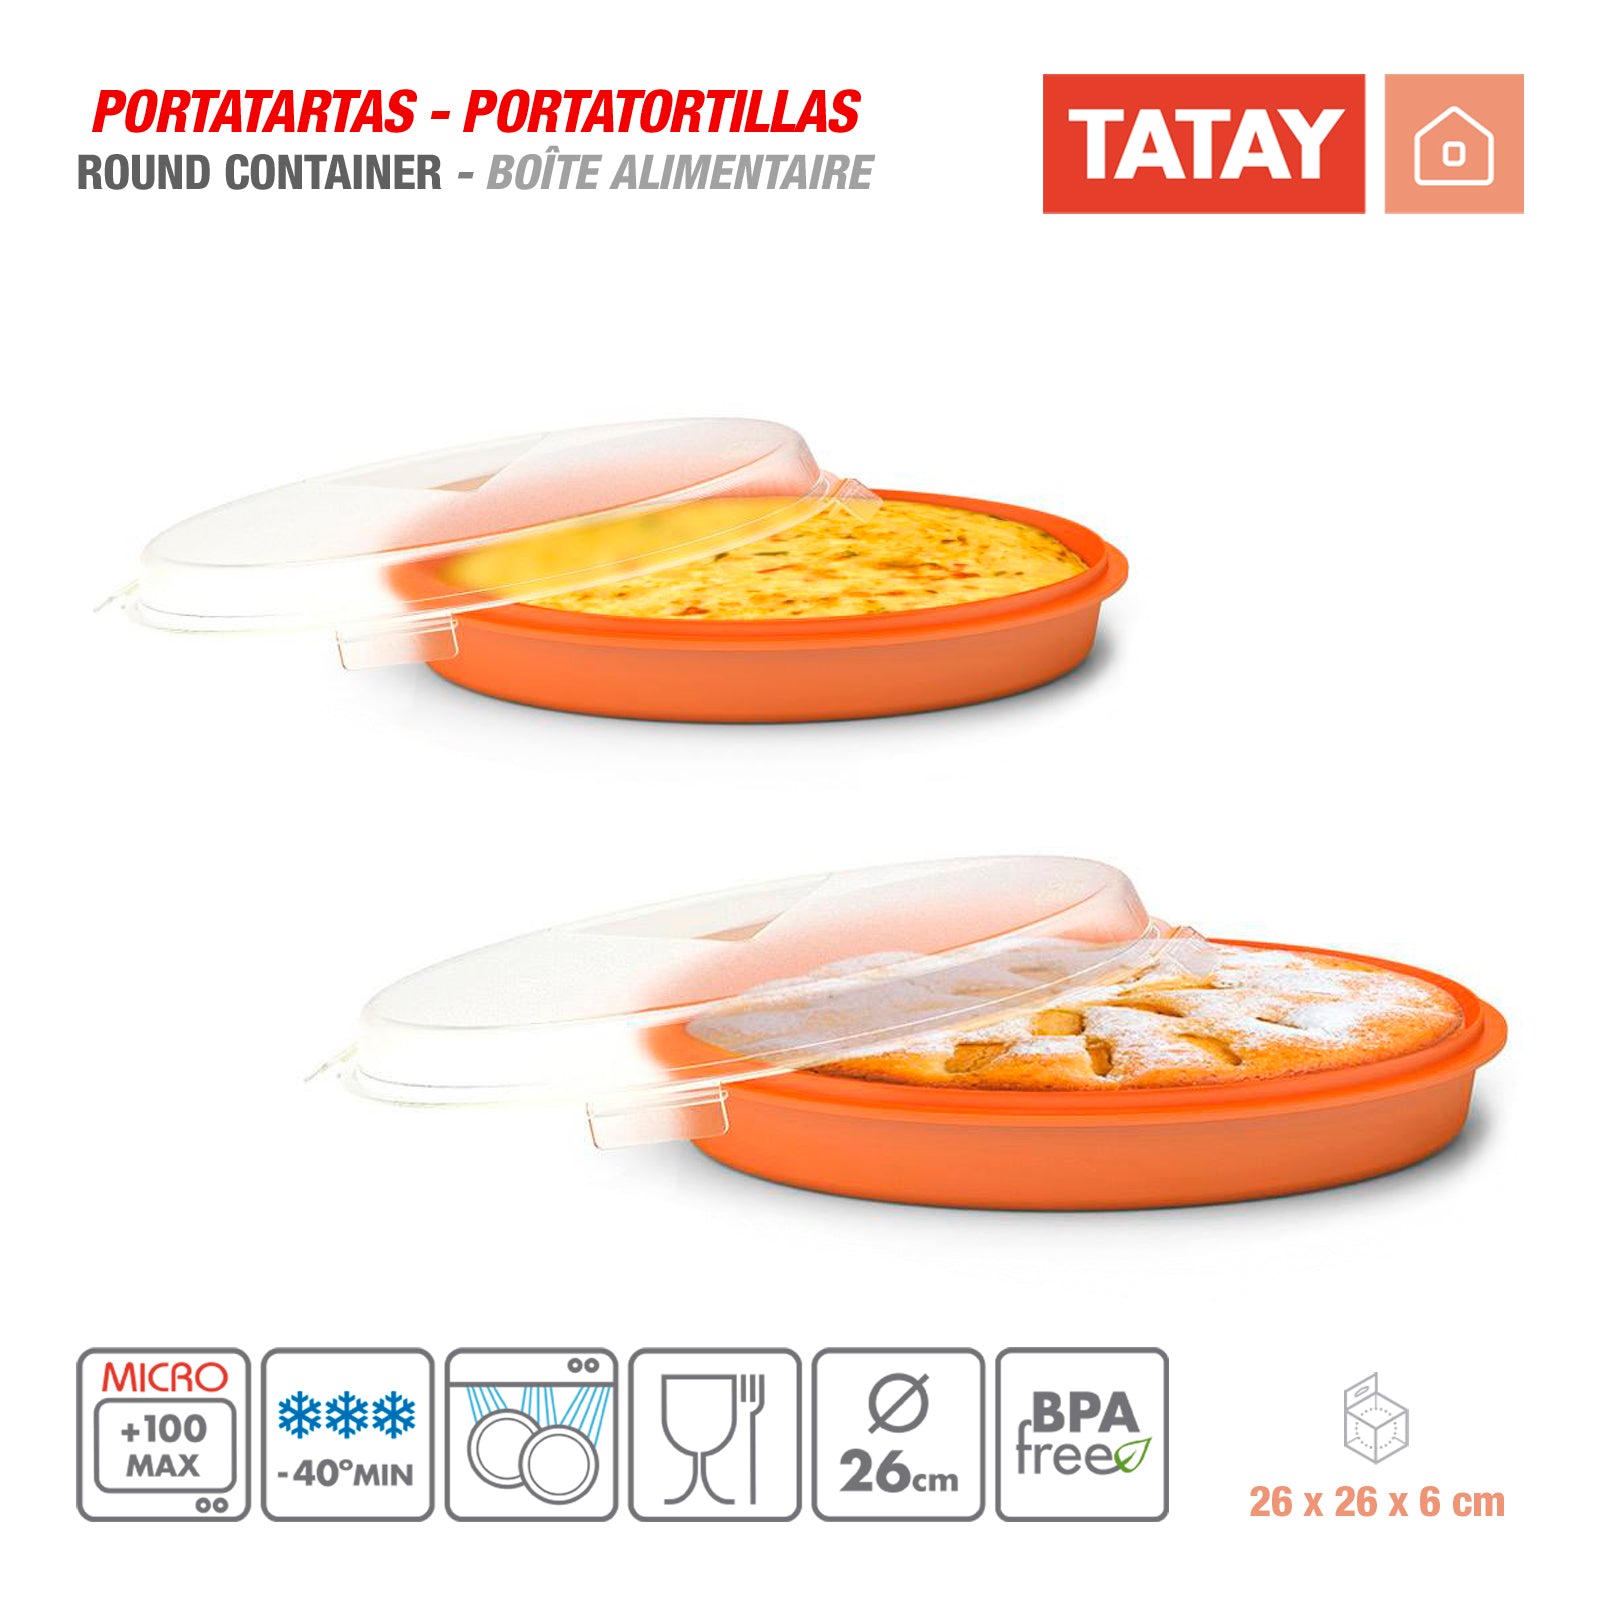 TATAY 1165109 - Recipiente Redondo de 26 cm Porta Tartas y Porta